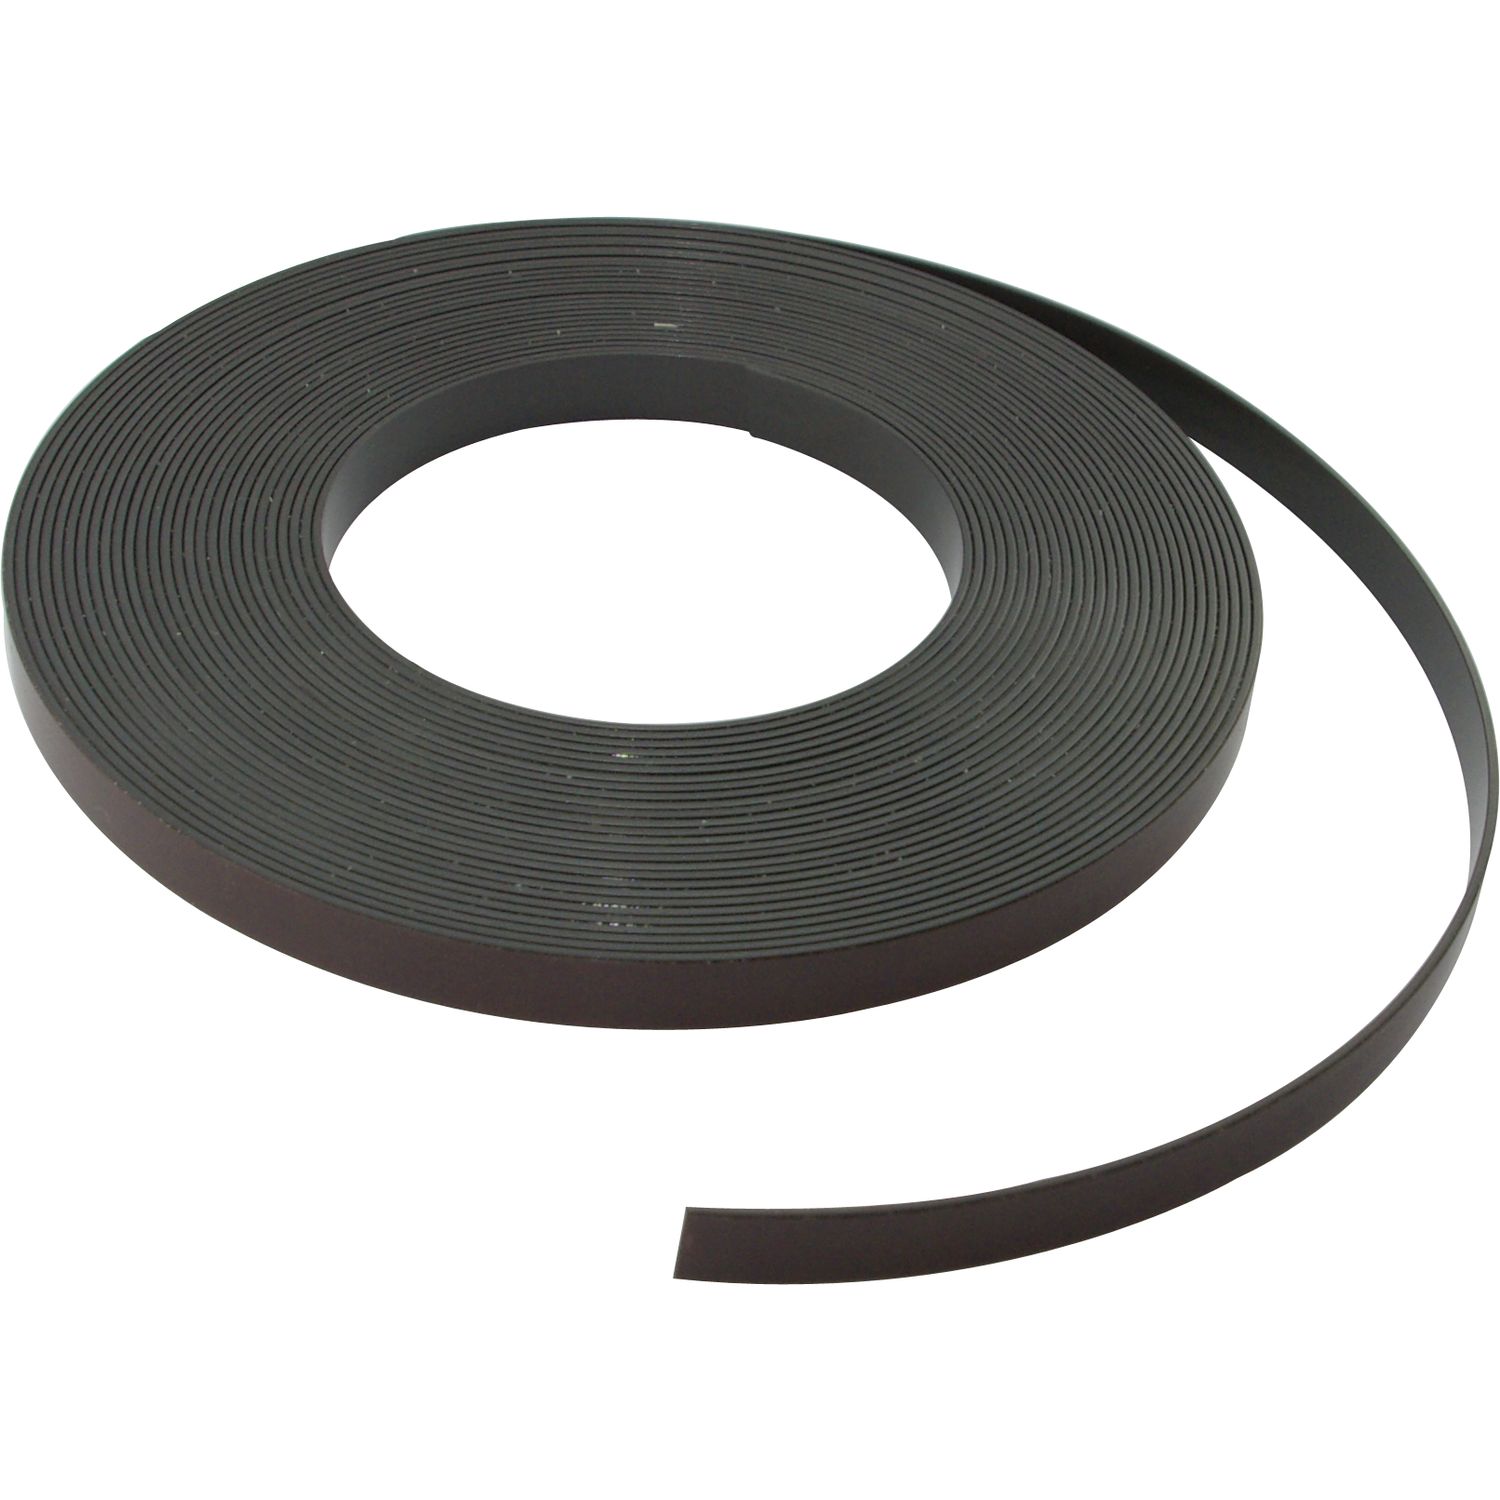 Nastro adesivo magnetico BM200 nero, larghezza 10 mm, rotolo 30 m